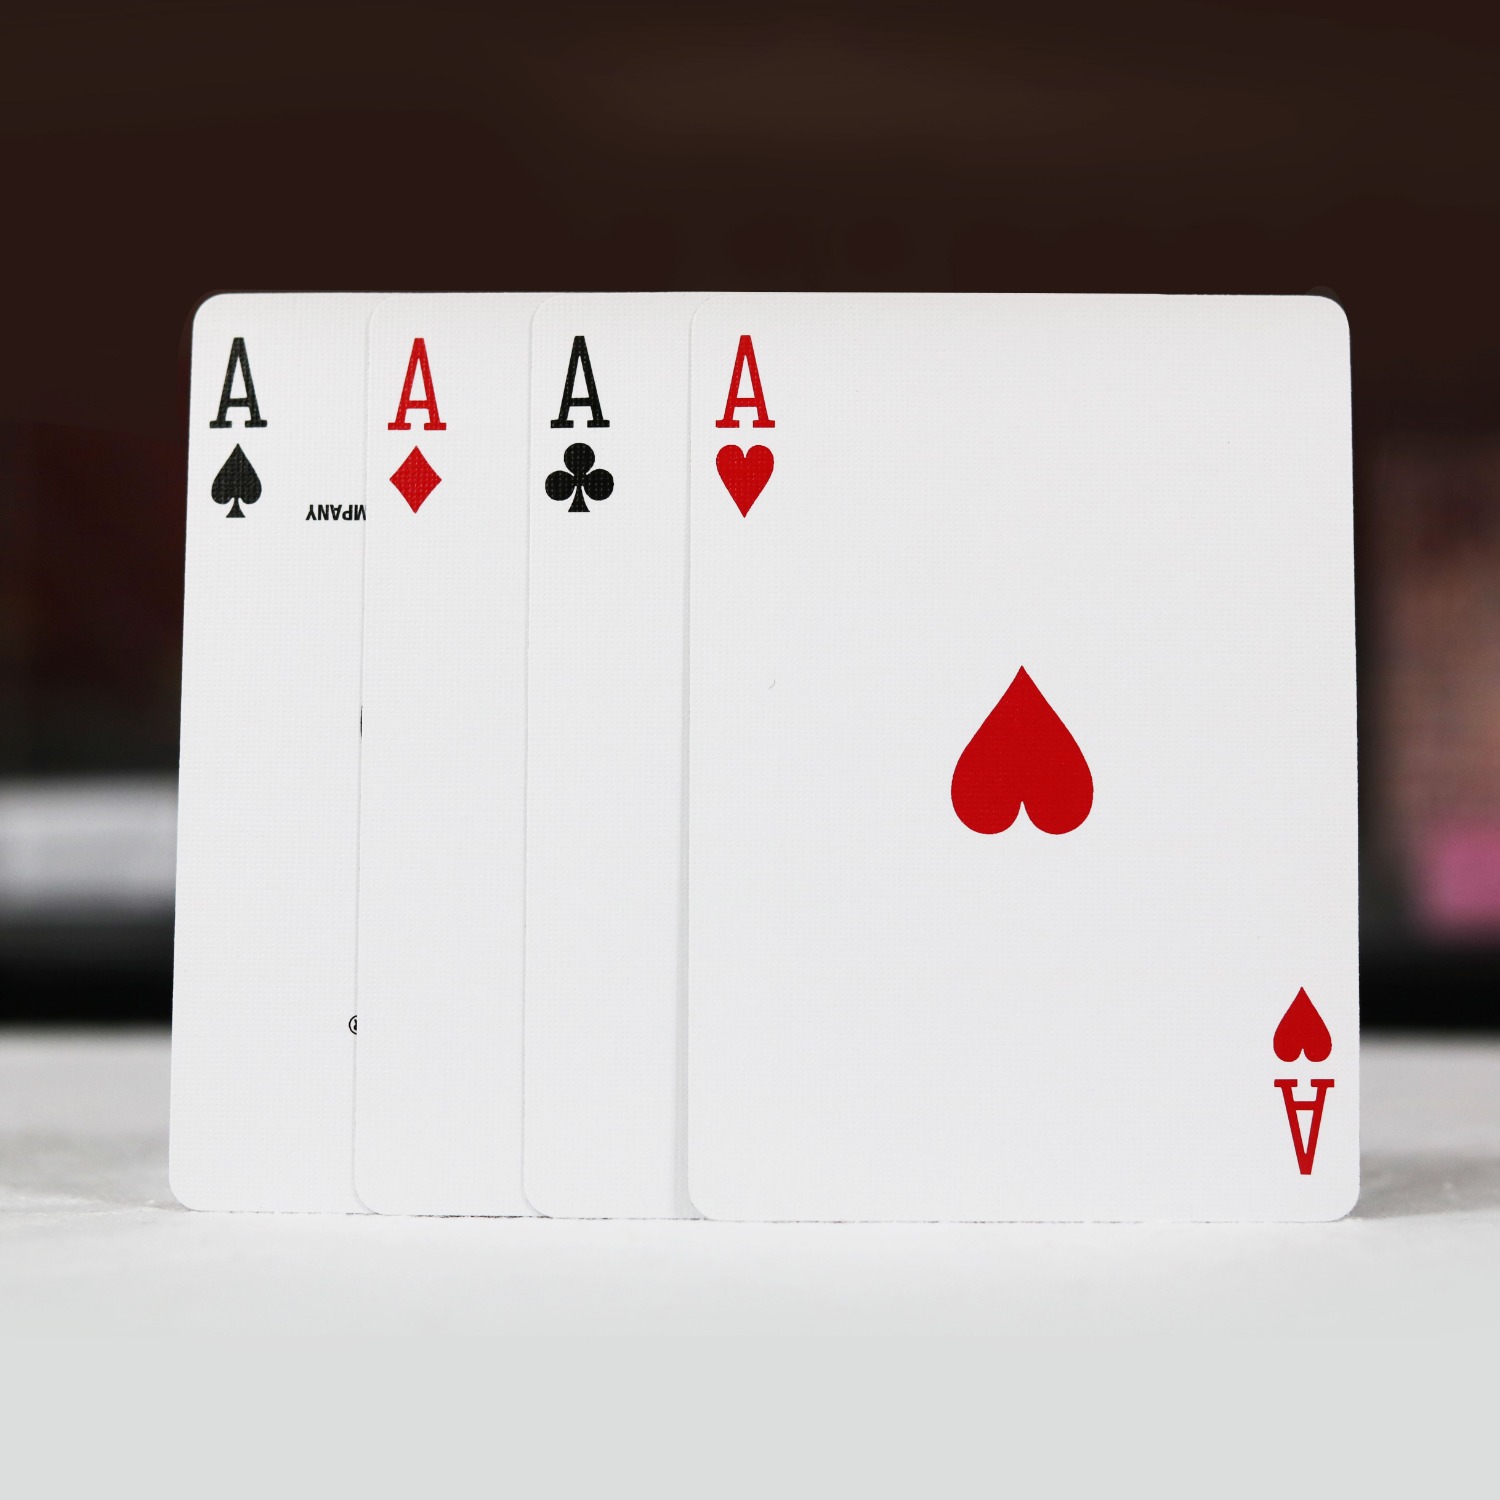 [코카콜라화이트] 4장의 카드가 마술사의 제스처에 순식간에 한장씩 뒤집어지고, 이어지는 반전!! 컬러풀한 카드의 뒷면이 순식간에 백지카드로 변해버립니다.